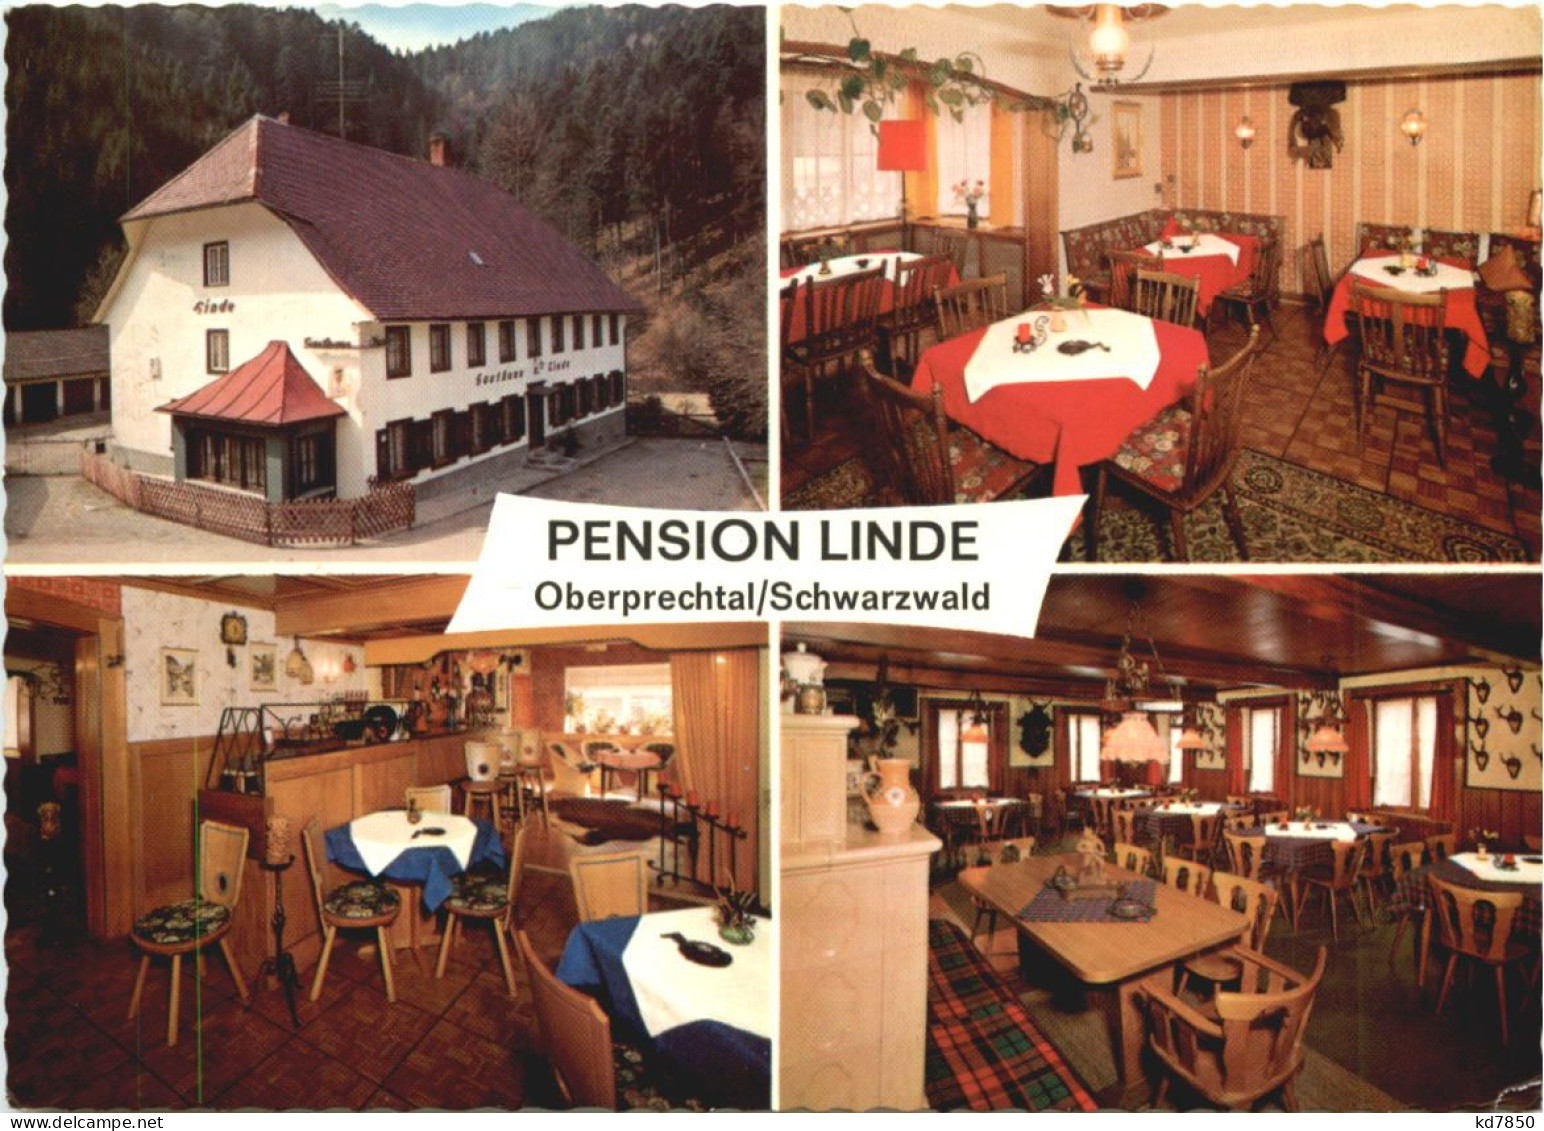 Oberprechtal - Pension Linde - Emmendingen